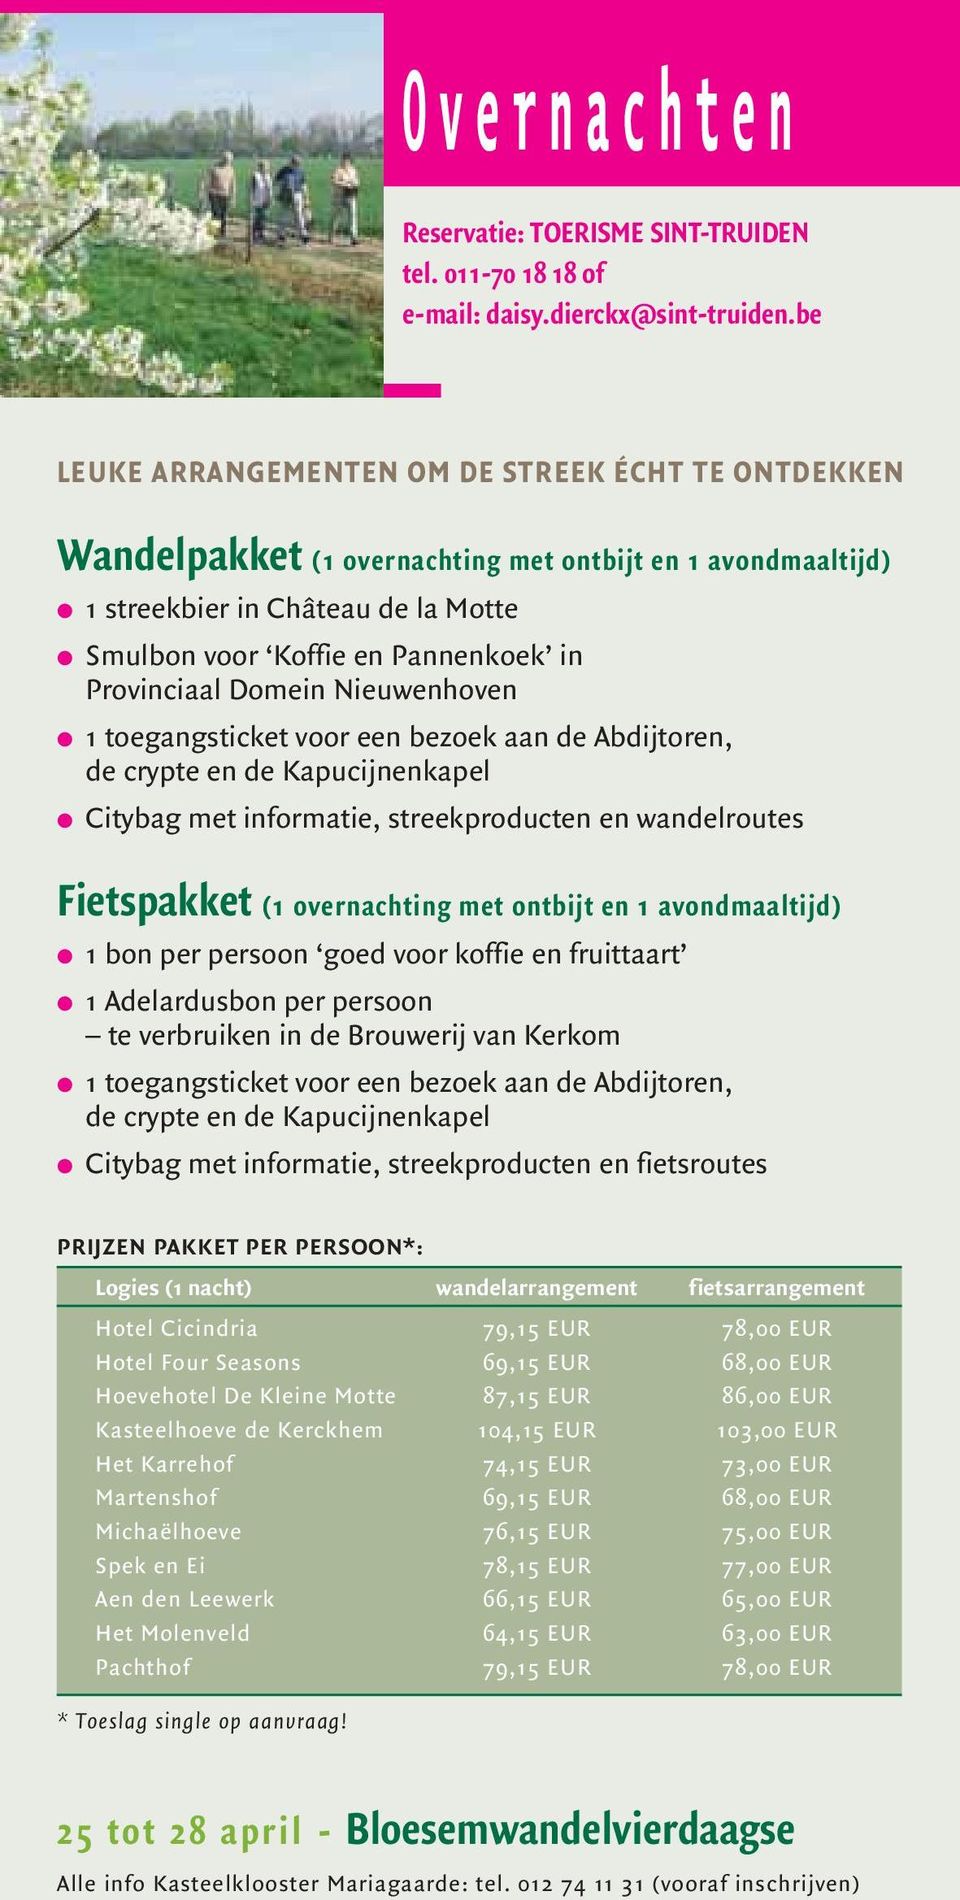 Domein Nieuwenhoven 1 toegangsticket voor een bezoek aan de Abdijtoren, de crypte en de Kapucijnenkapel Citybag met informatie, streekproducten en wandelroutes Fietspakket (1 overnachting met ontbijt